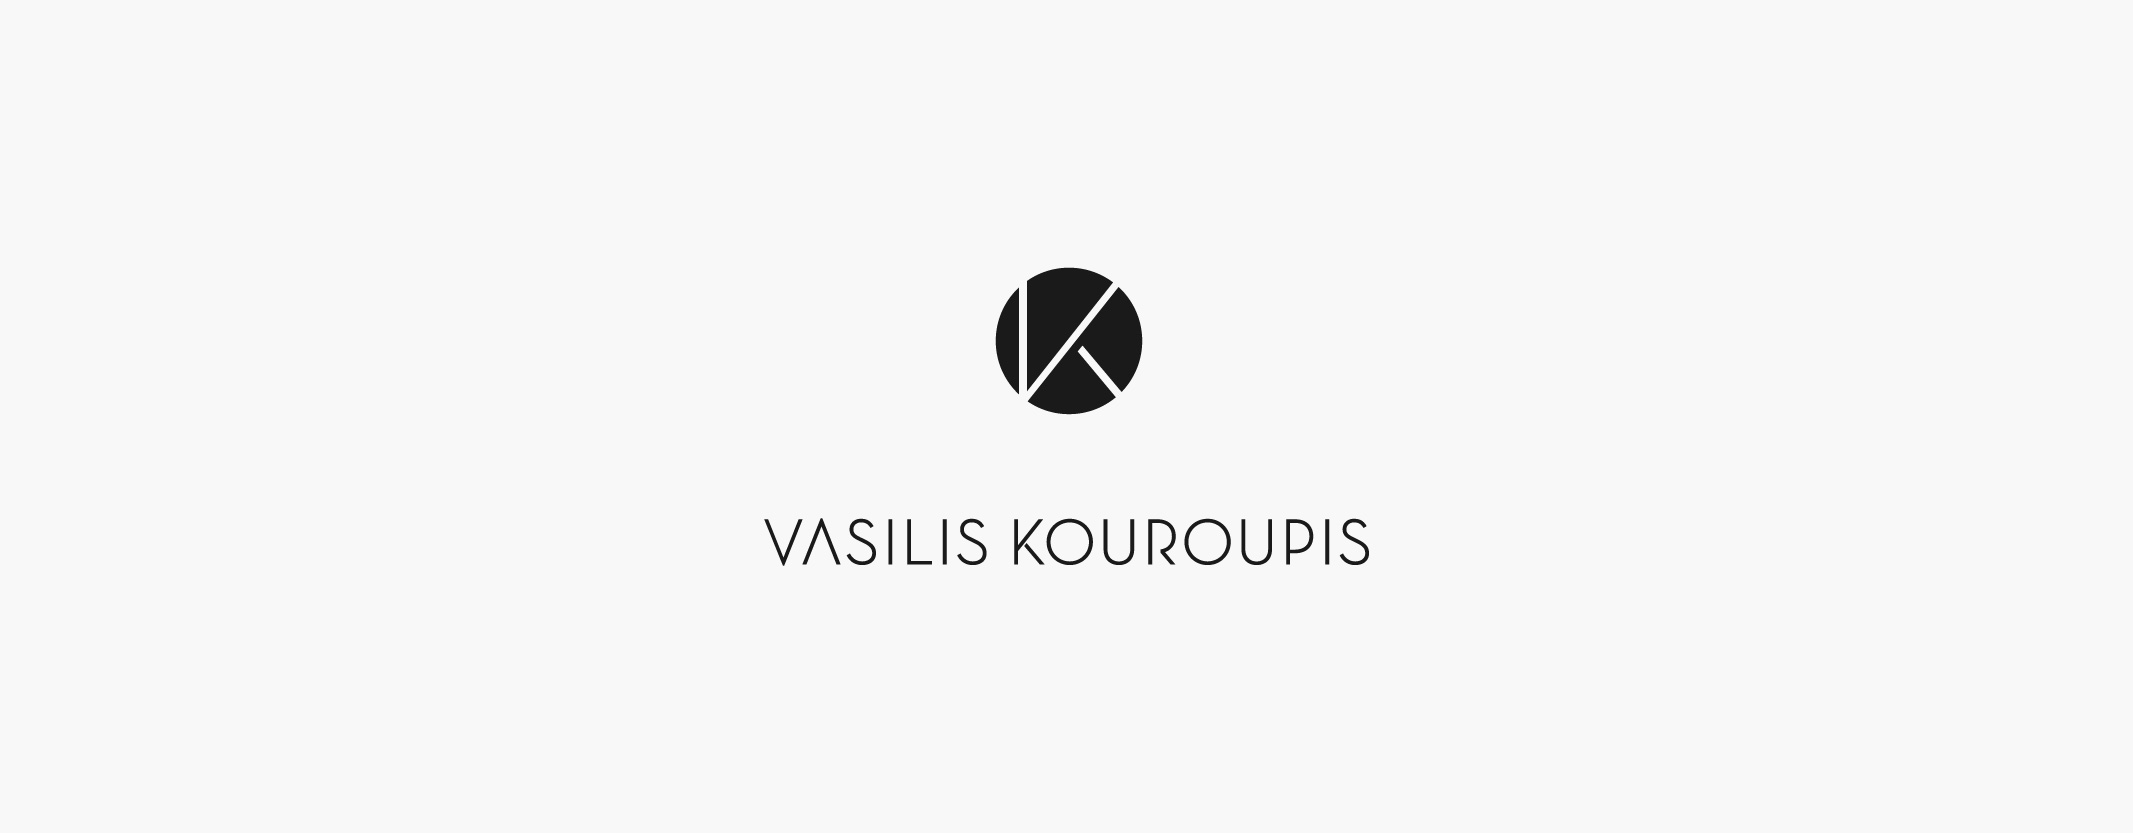 24_logos_vasiliskouroupis